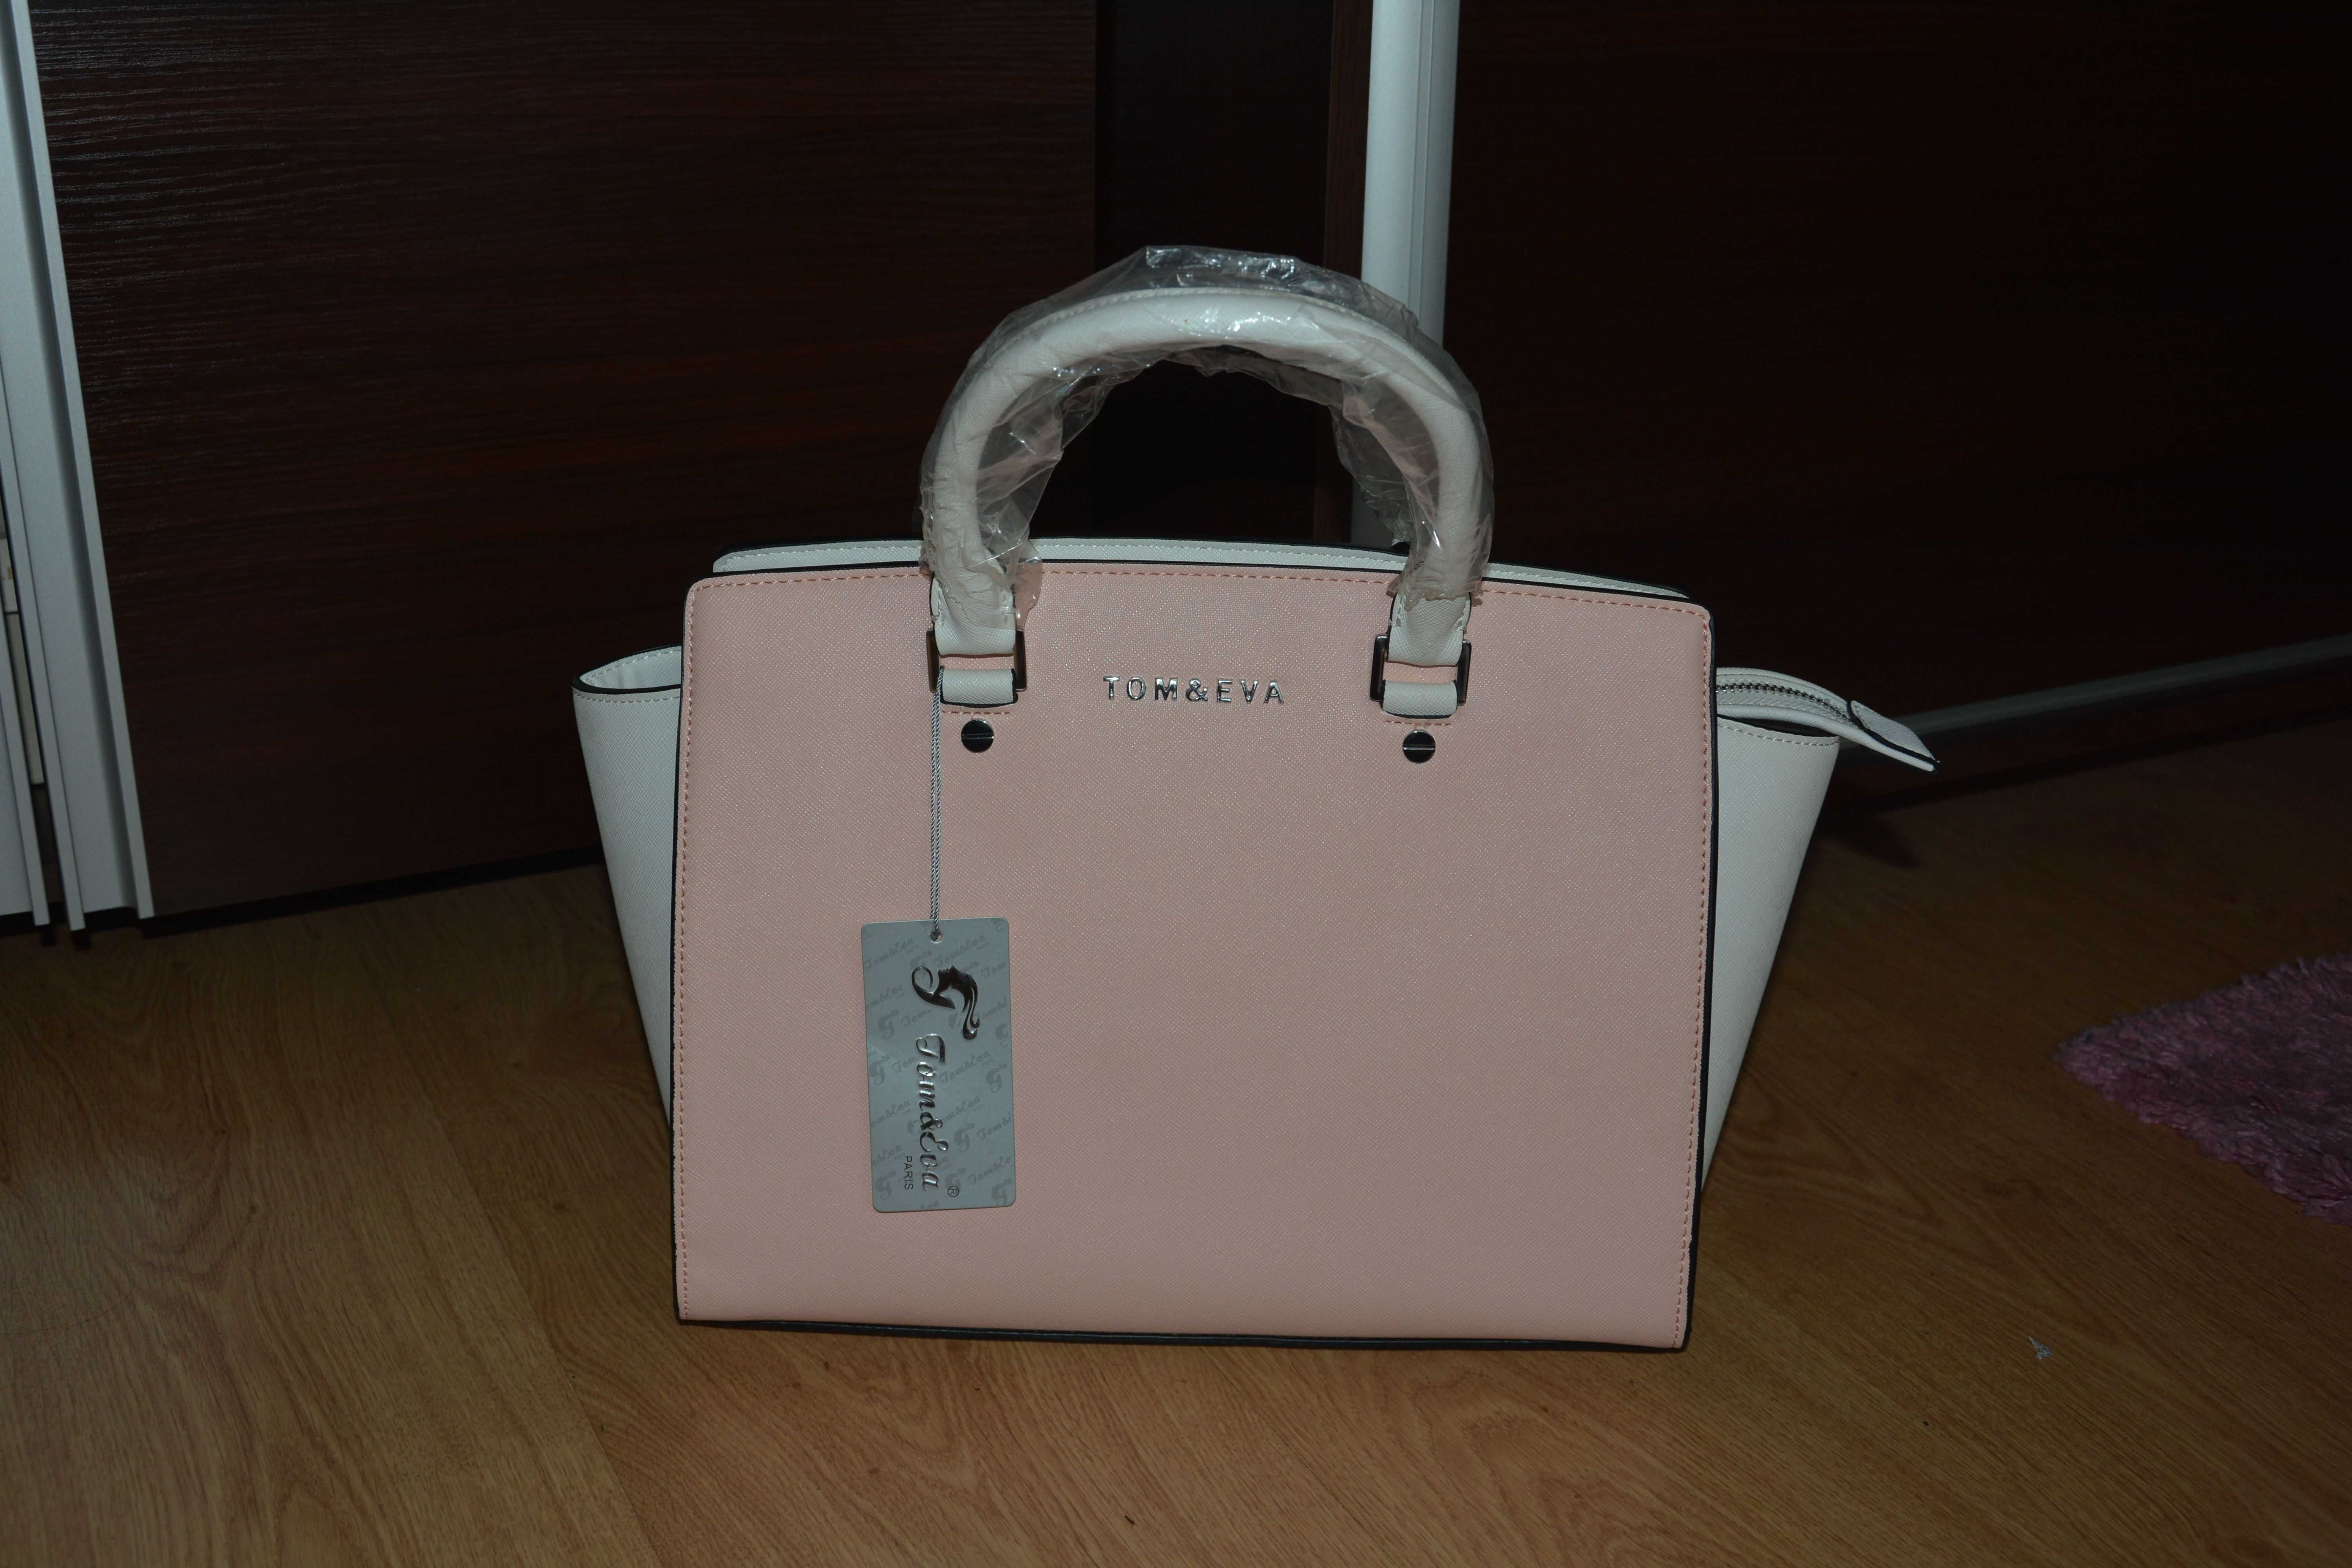 Nowa duża różowo-biała torebka trapezowa kuferek saffiano Tom & Eva